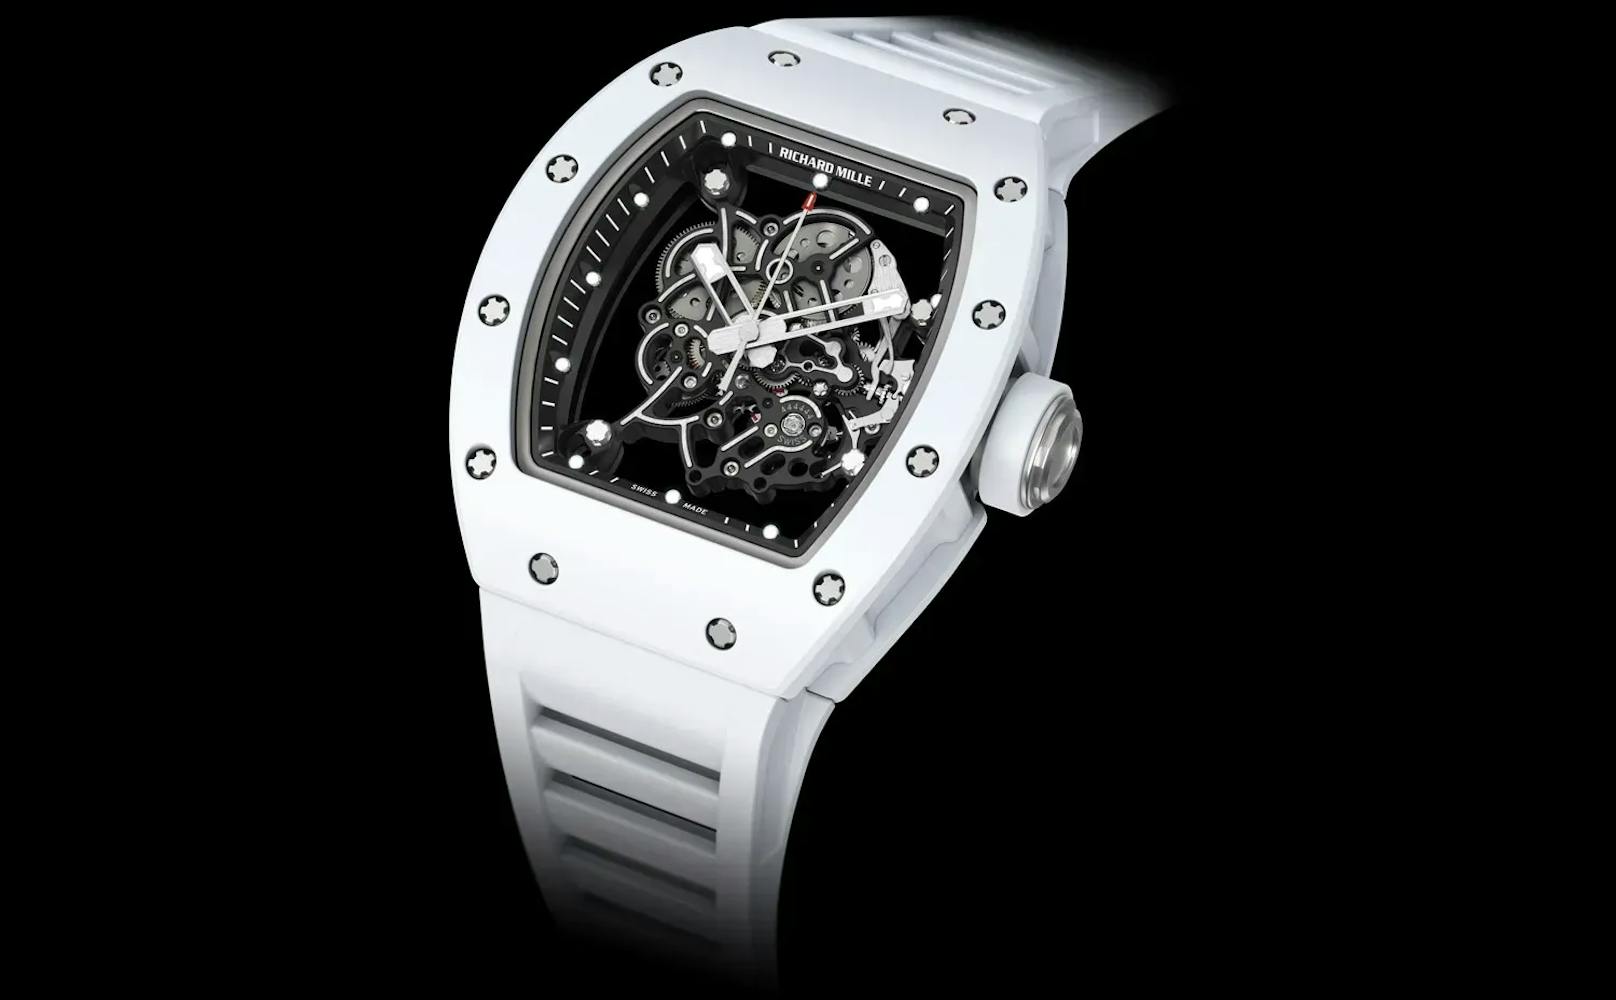 Die Richard-Mille-Uhr ist 100.000 Euro wert.